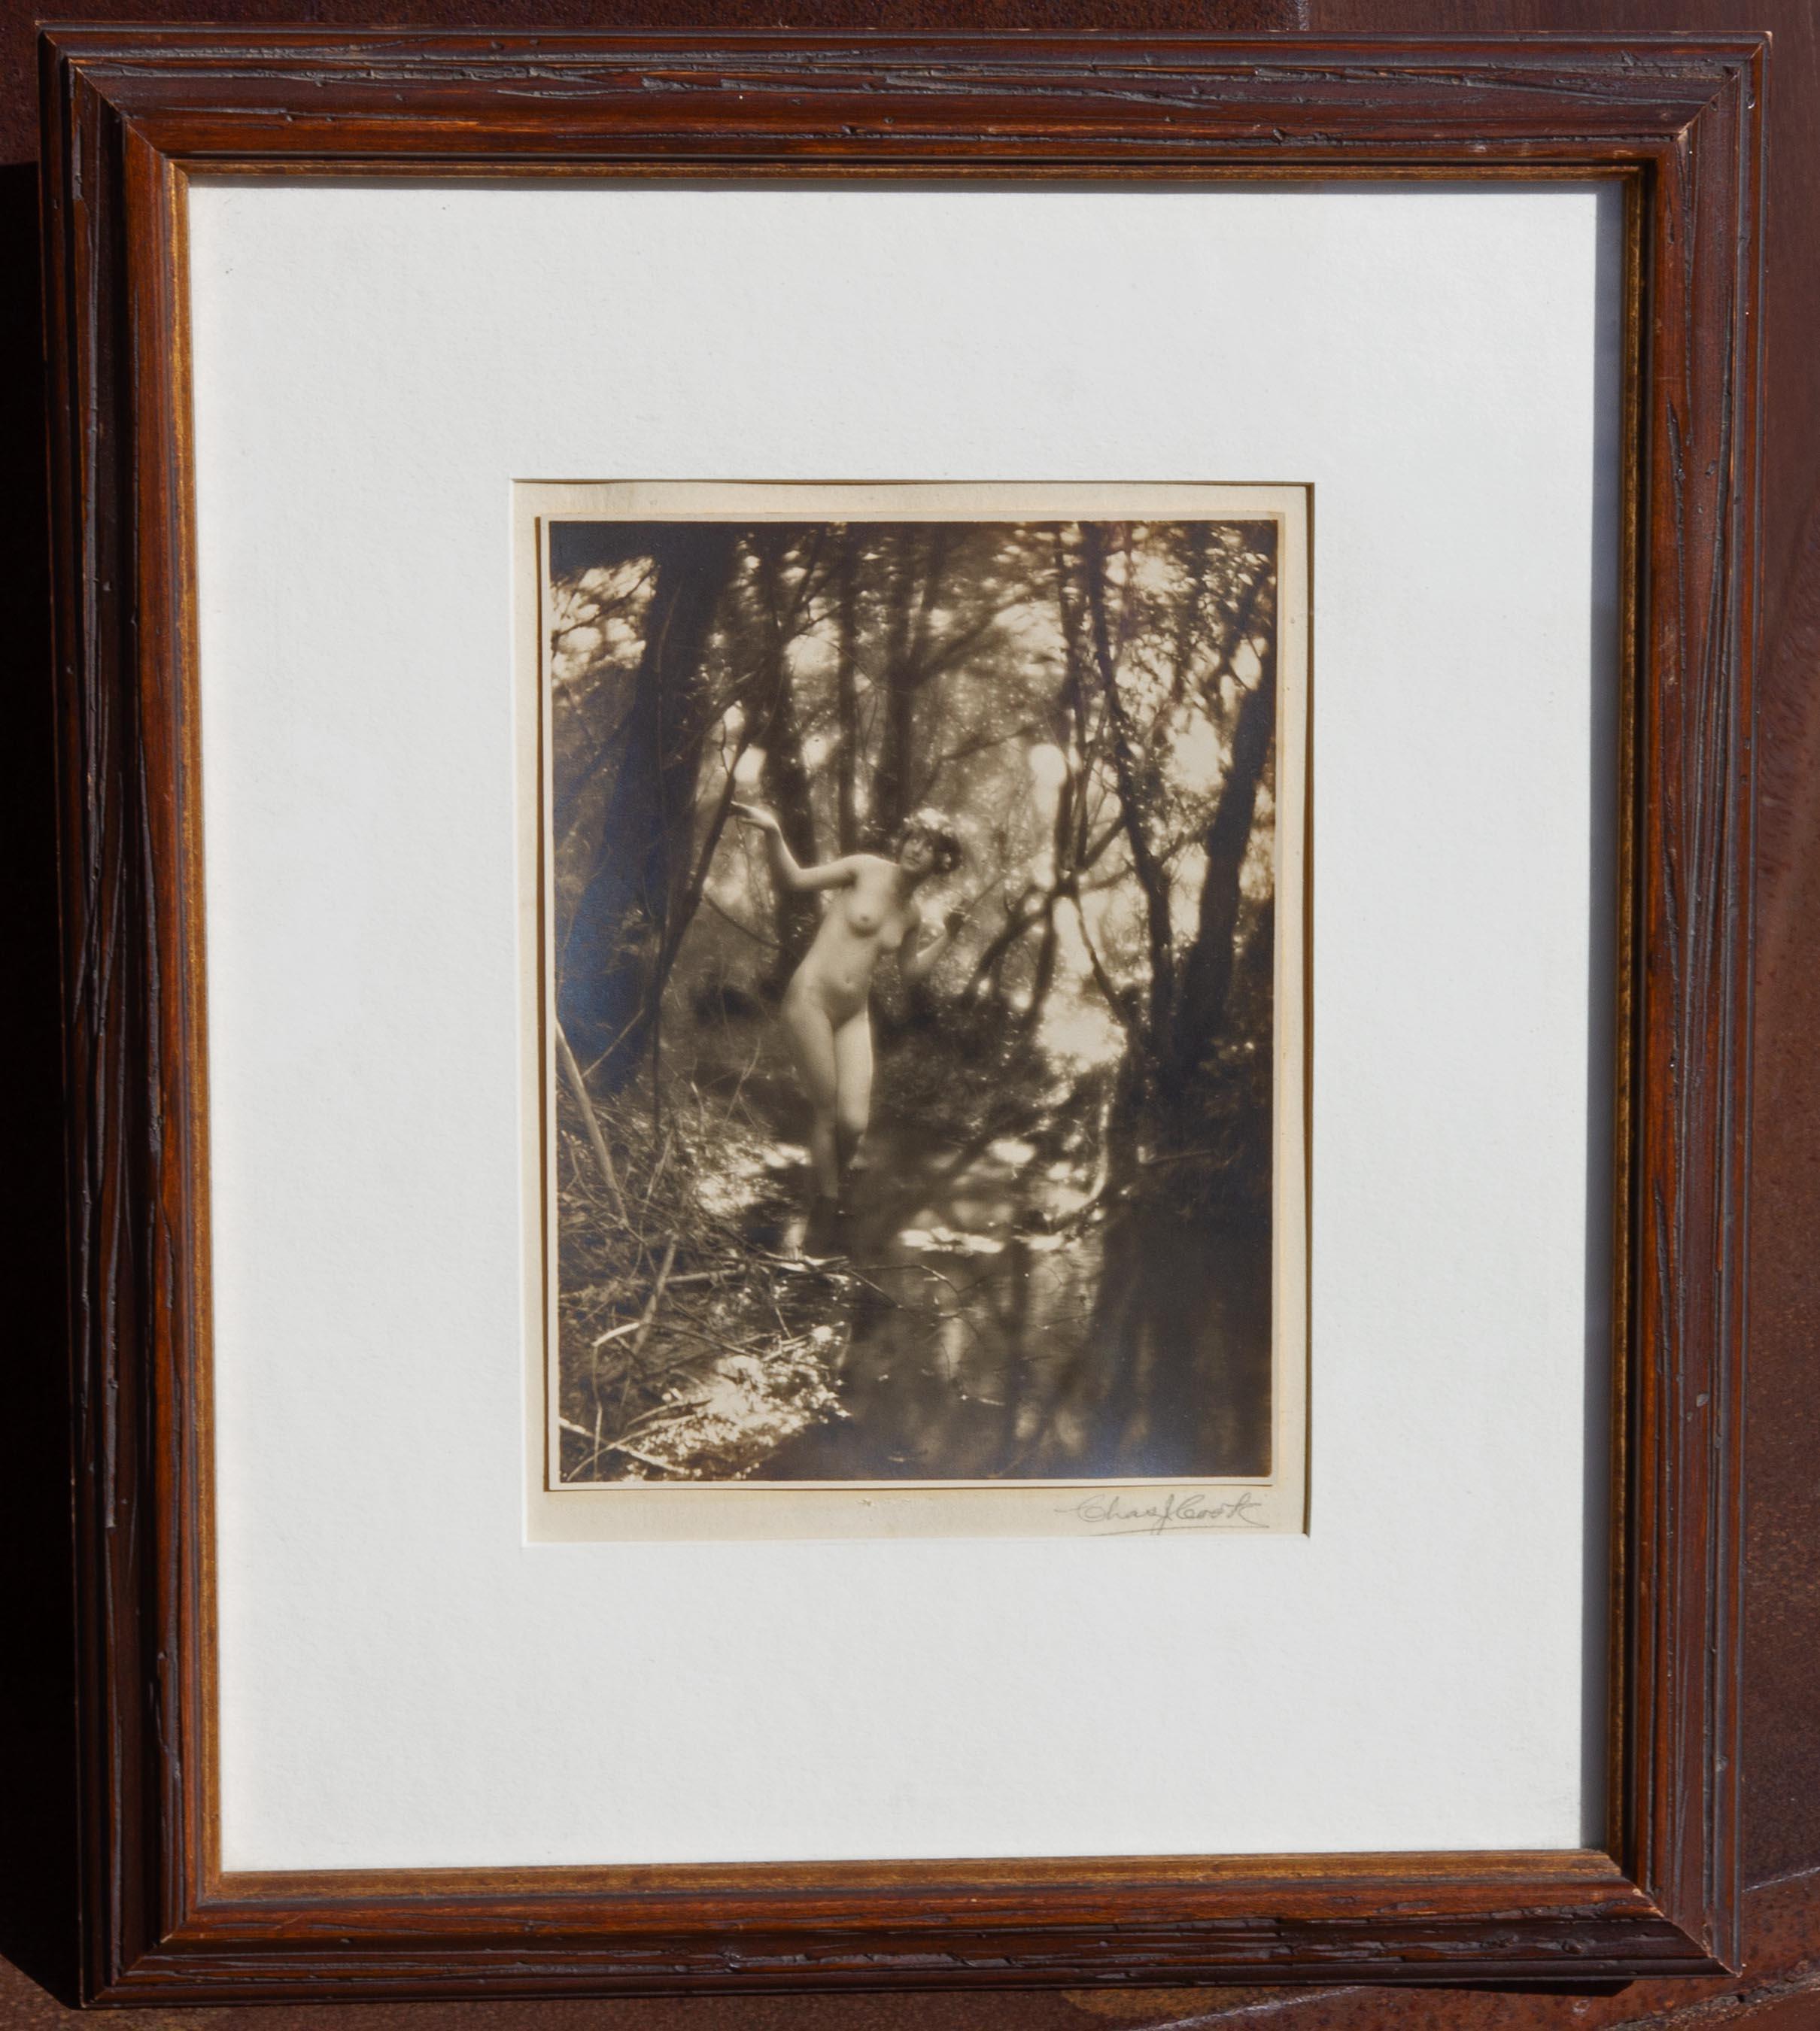 Pictorialistisches Foto einer nackten Frau in einem Waldinterieur von Charles Cook. Silberner Druck. Um 1910.

Charles J. Cook war ein Maler und Fotograf, der sich auf Aktfotografie spezialisiert hatte. Mindestens zwischen 1908 und 1912 wohnte er